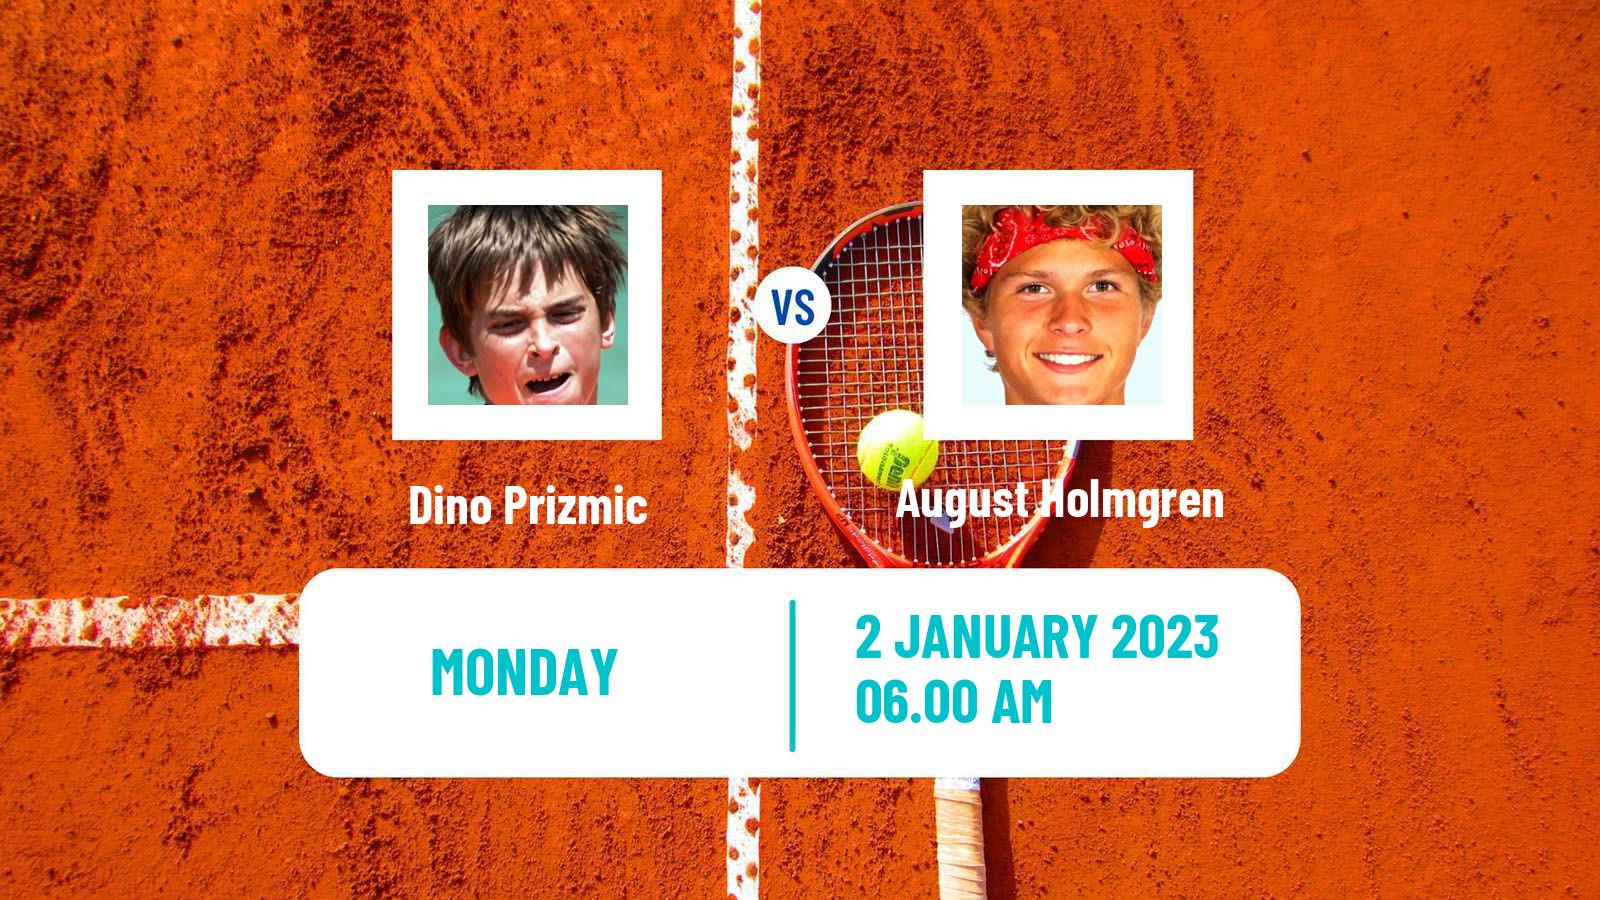 Tennis ATP Challenger Dino Prizmic - August Holmgren